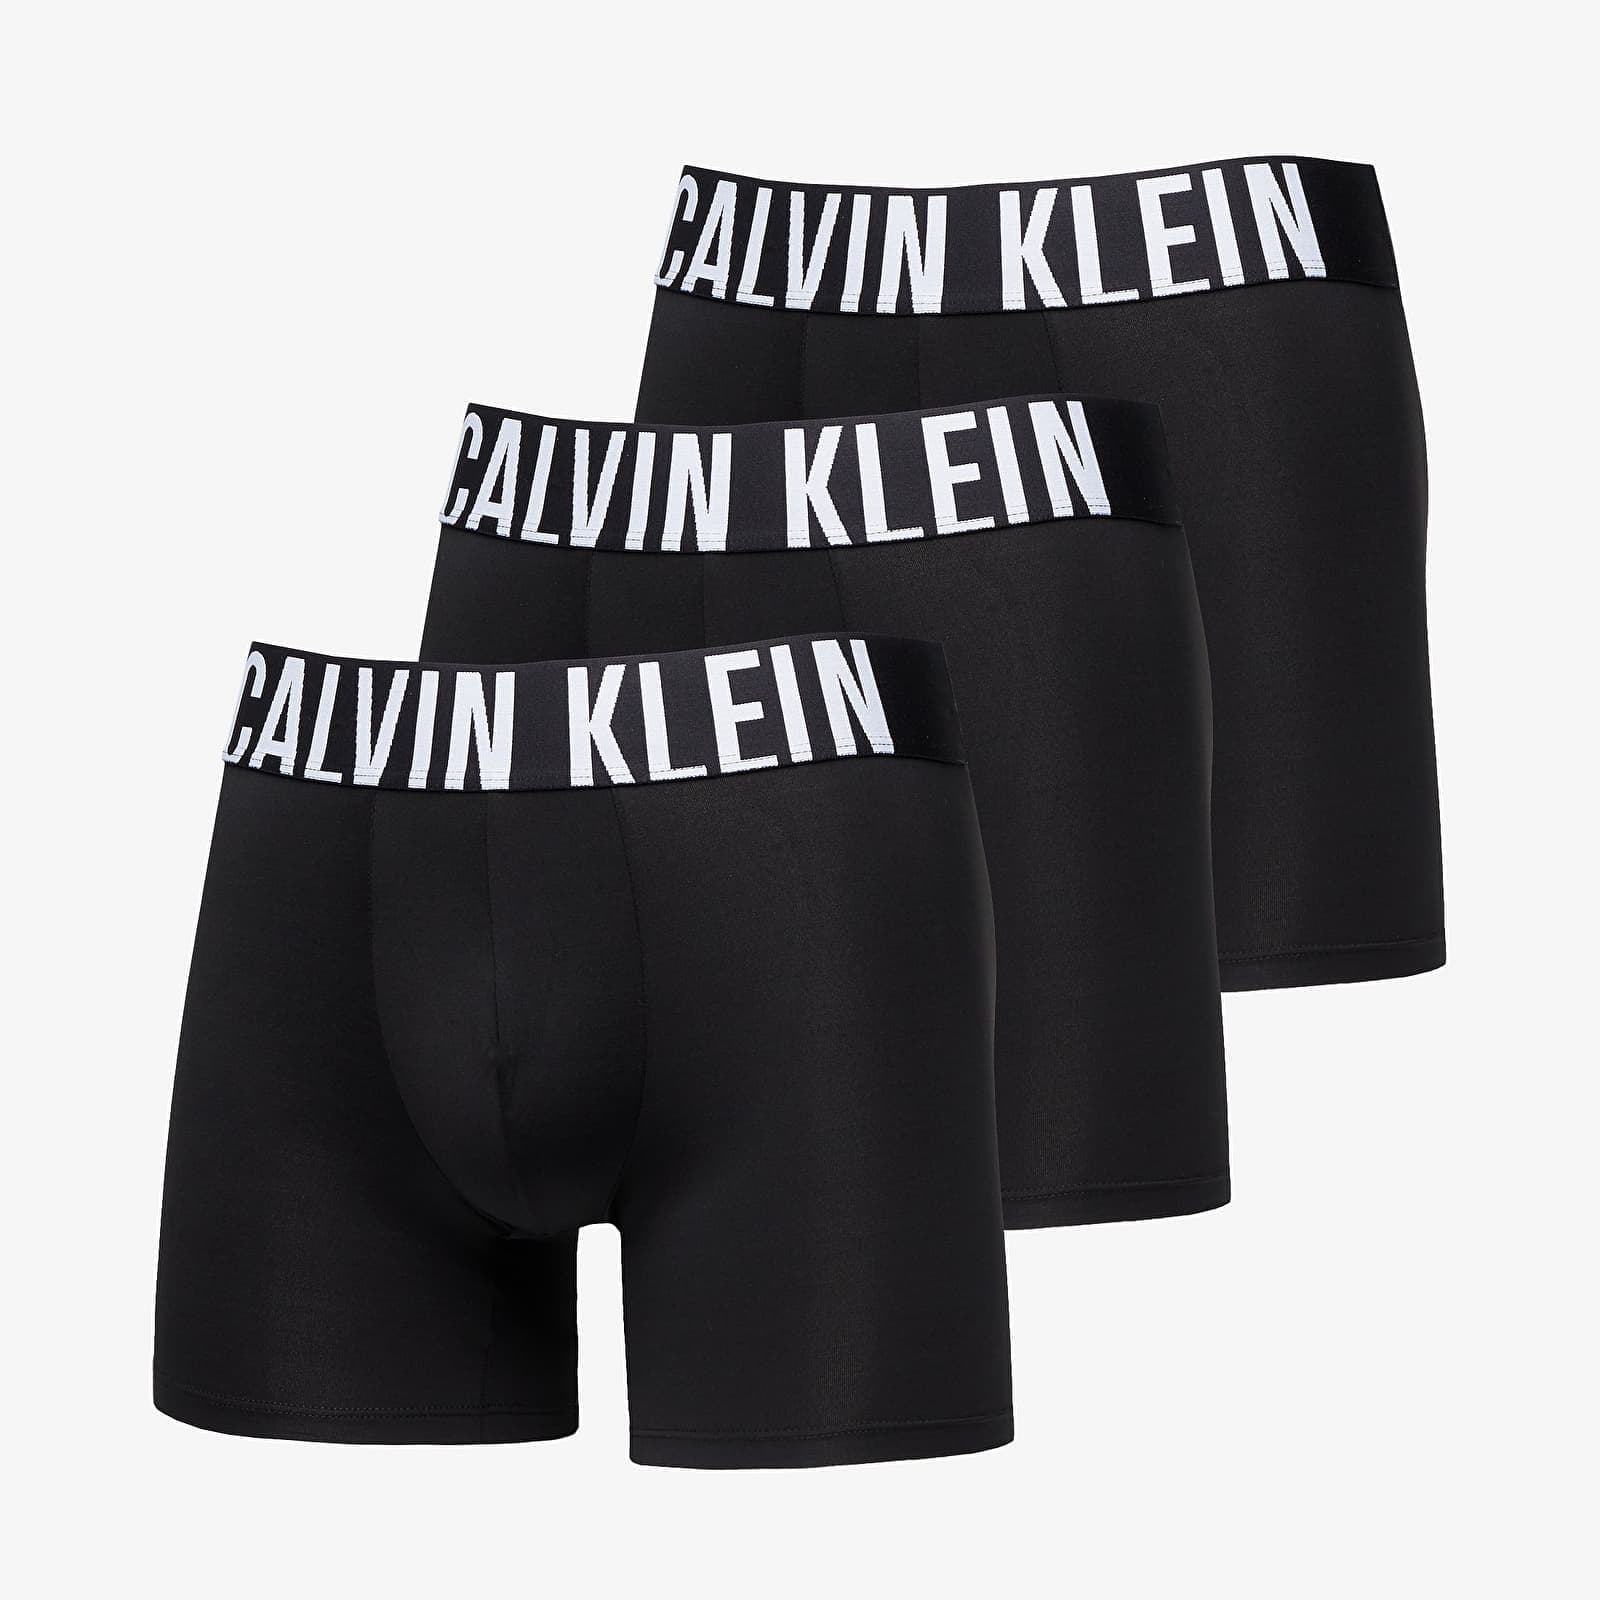 Боксерки Calvin Klein Intense Power Boxer Brief 3-Pack Black